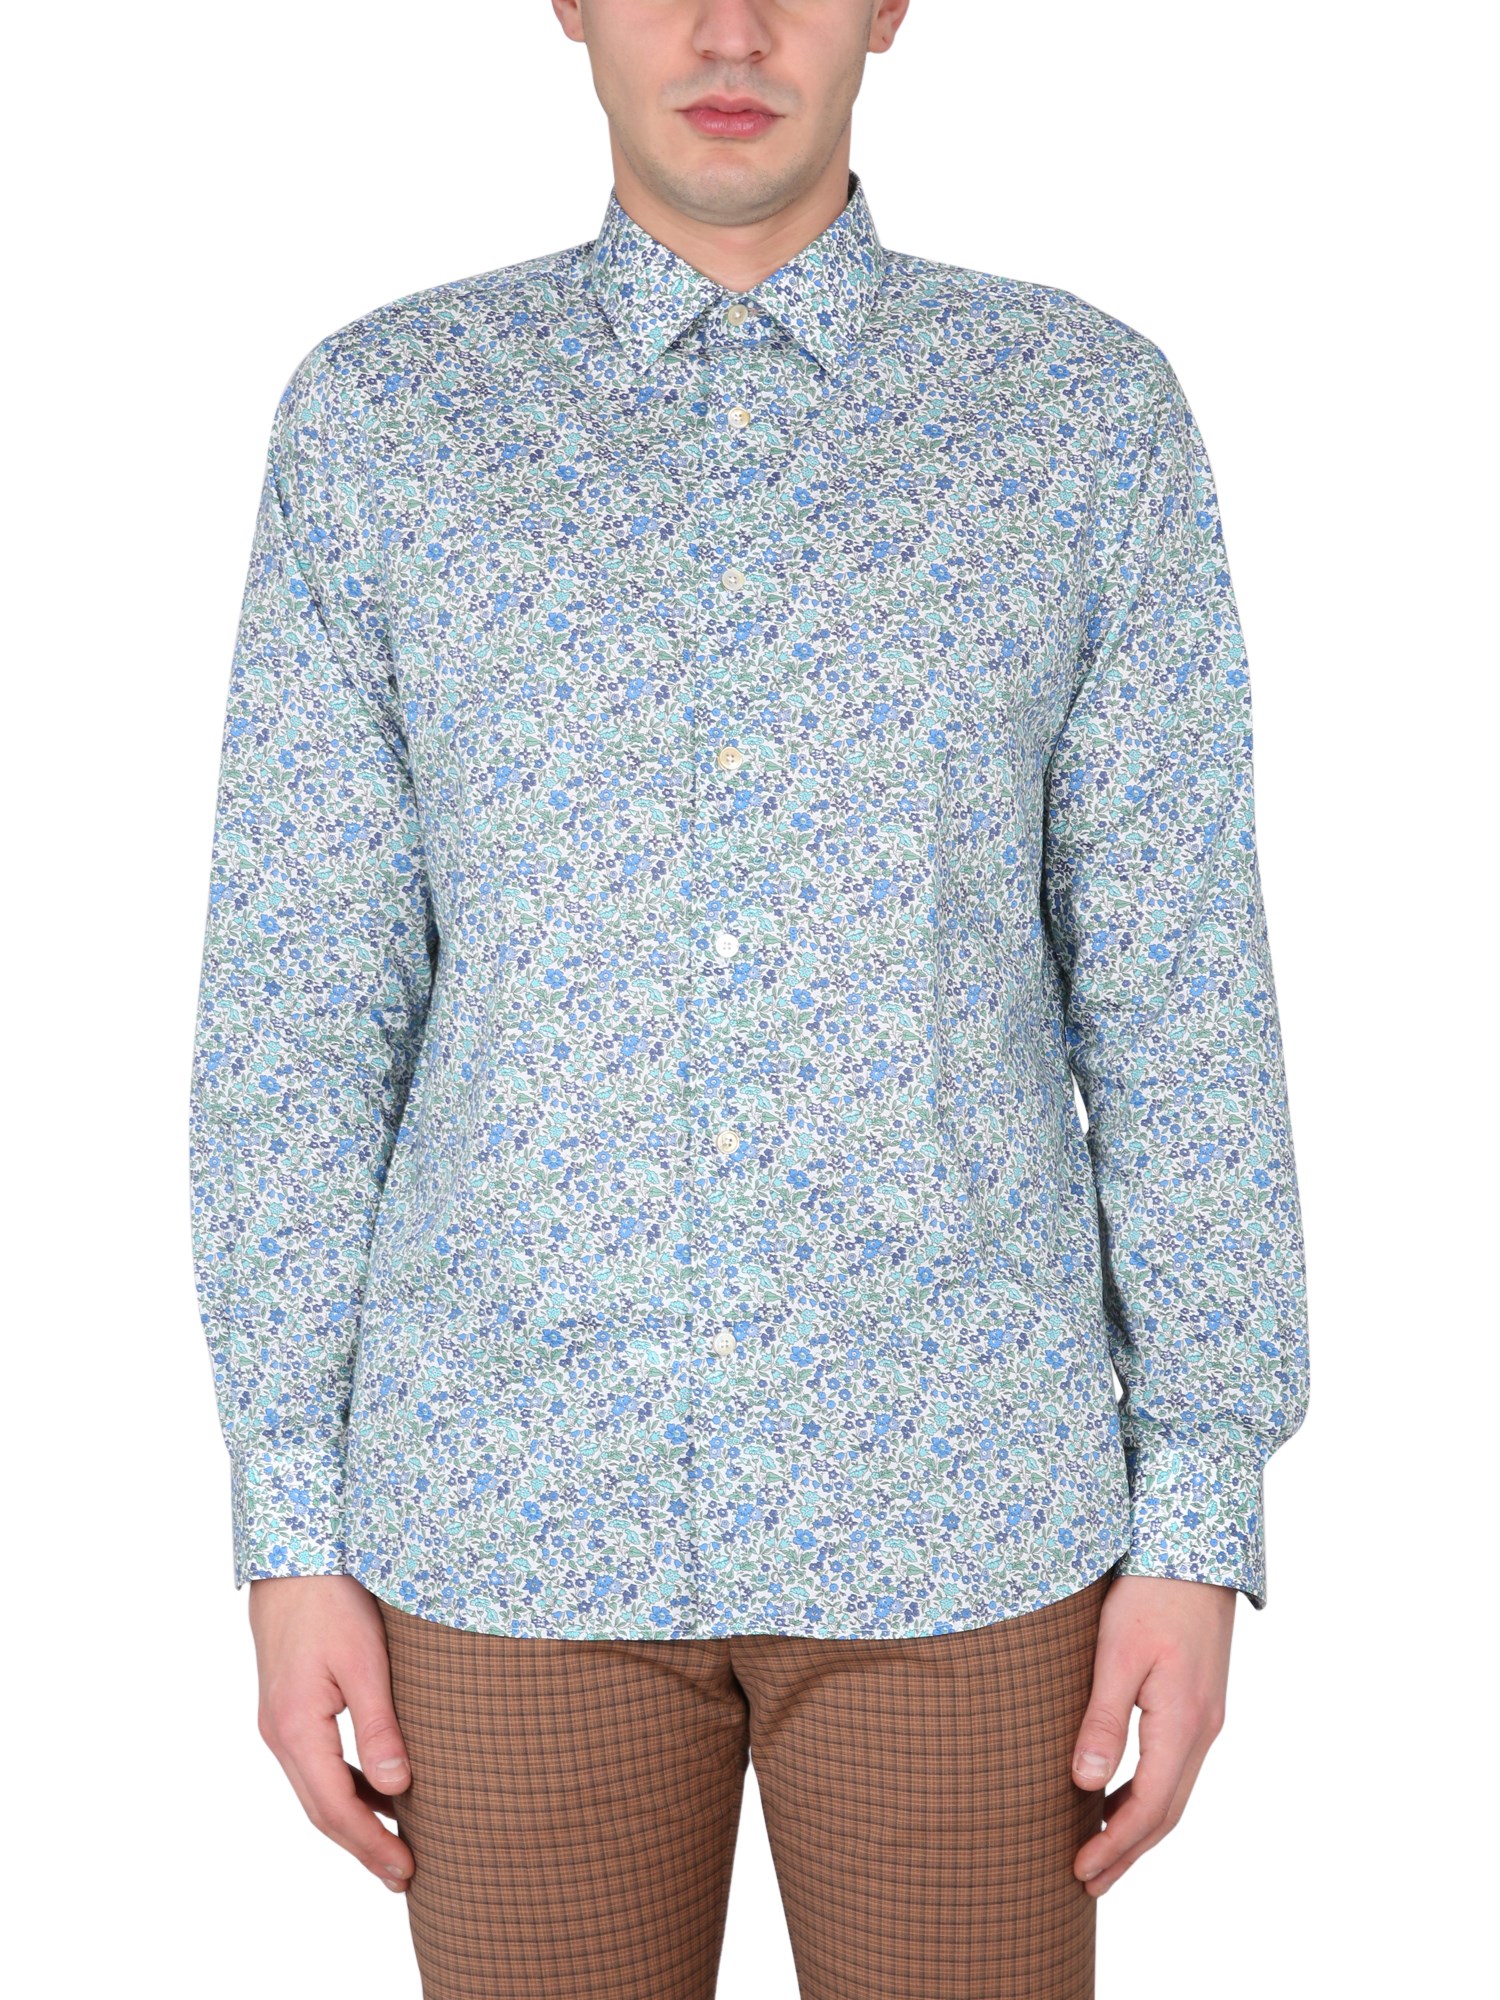 paul smith liberty patterned shirt